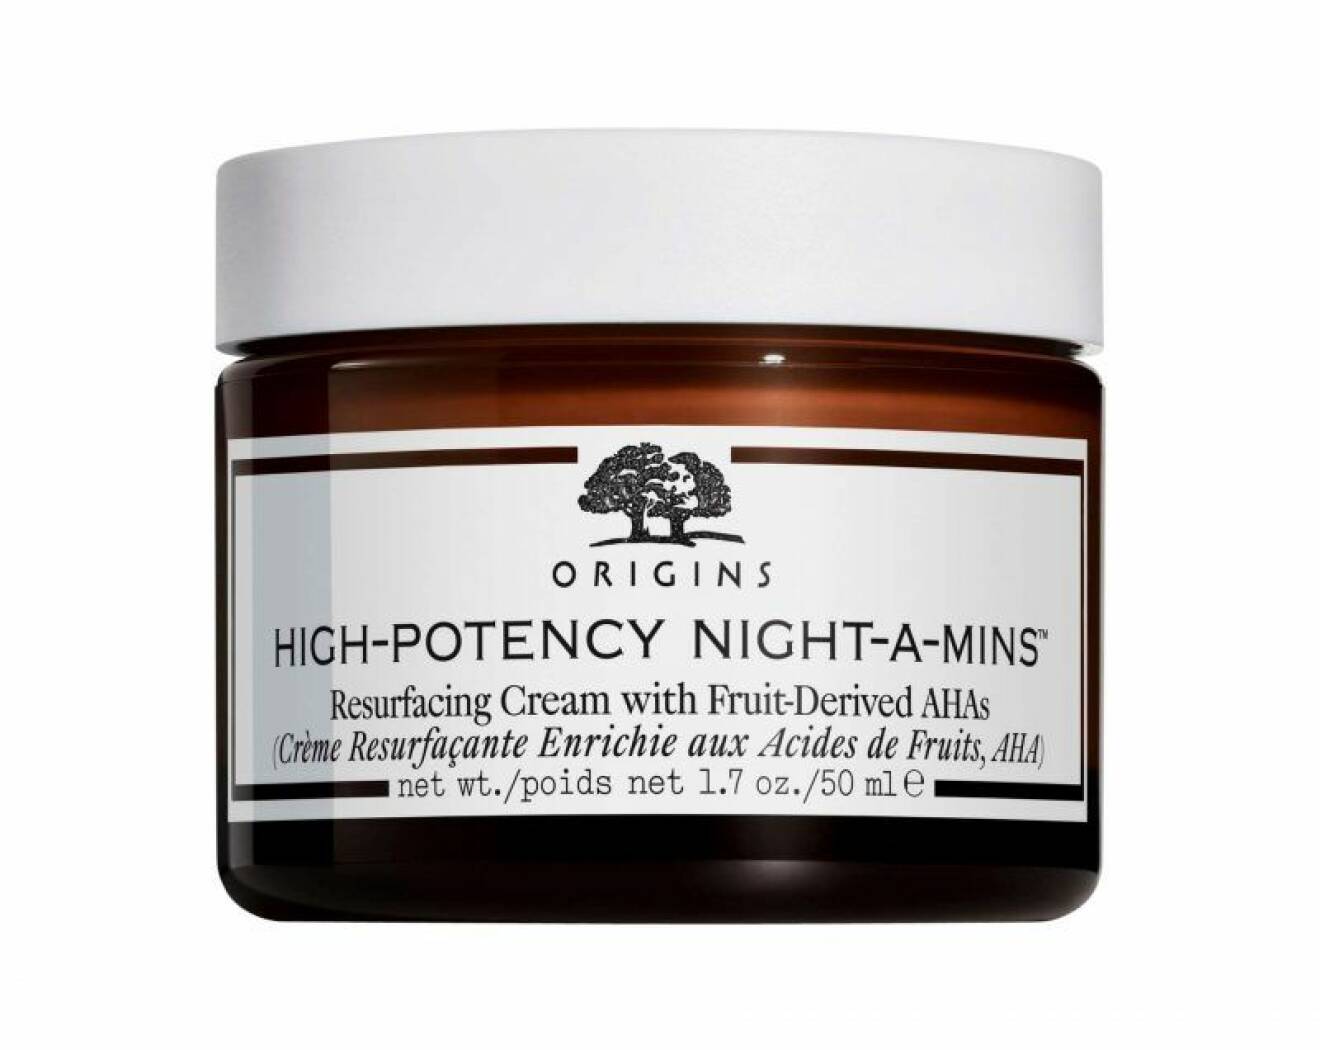 High potency night-a-mins från Origins